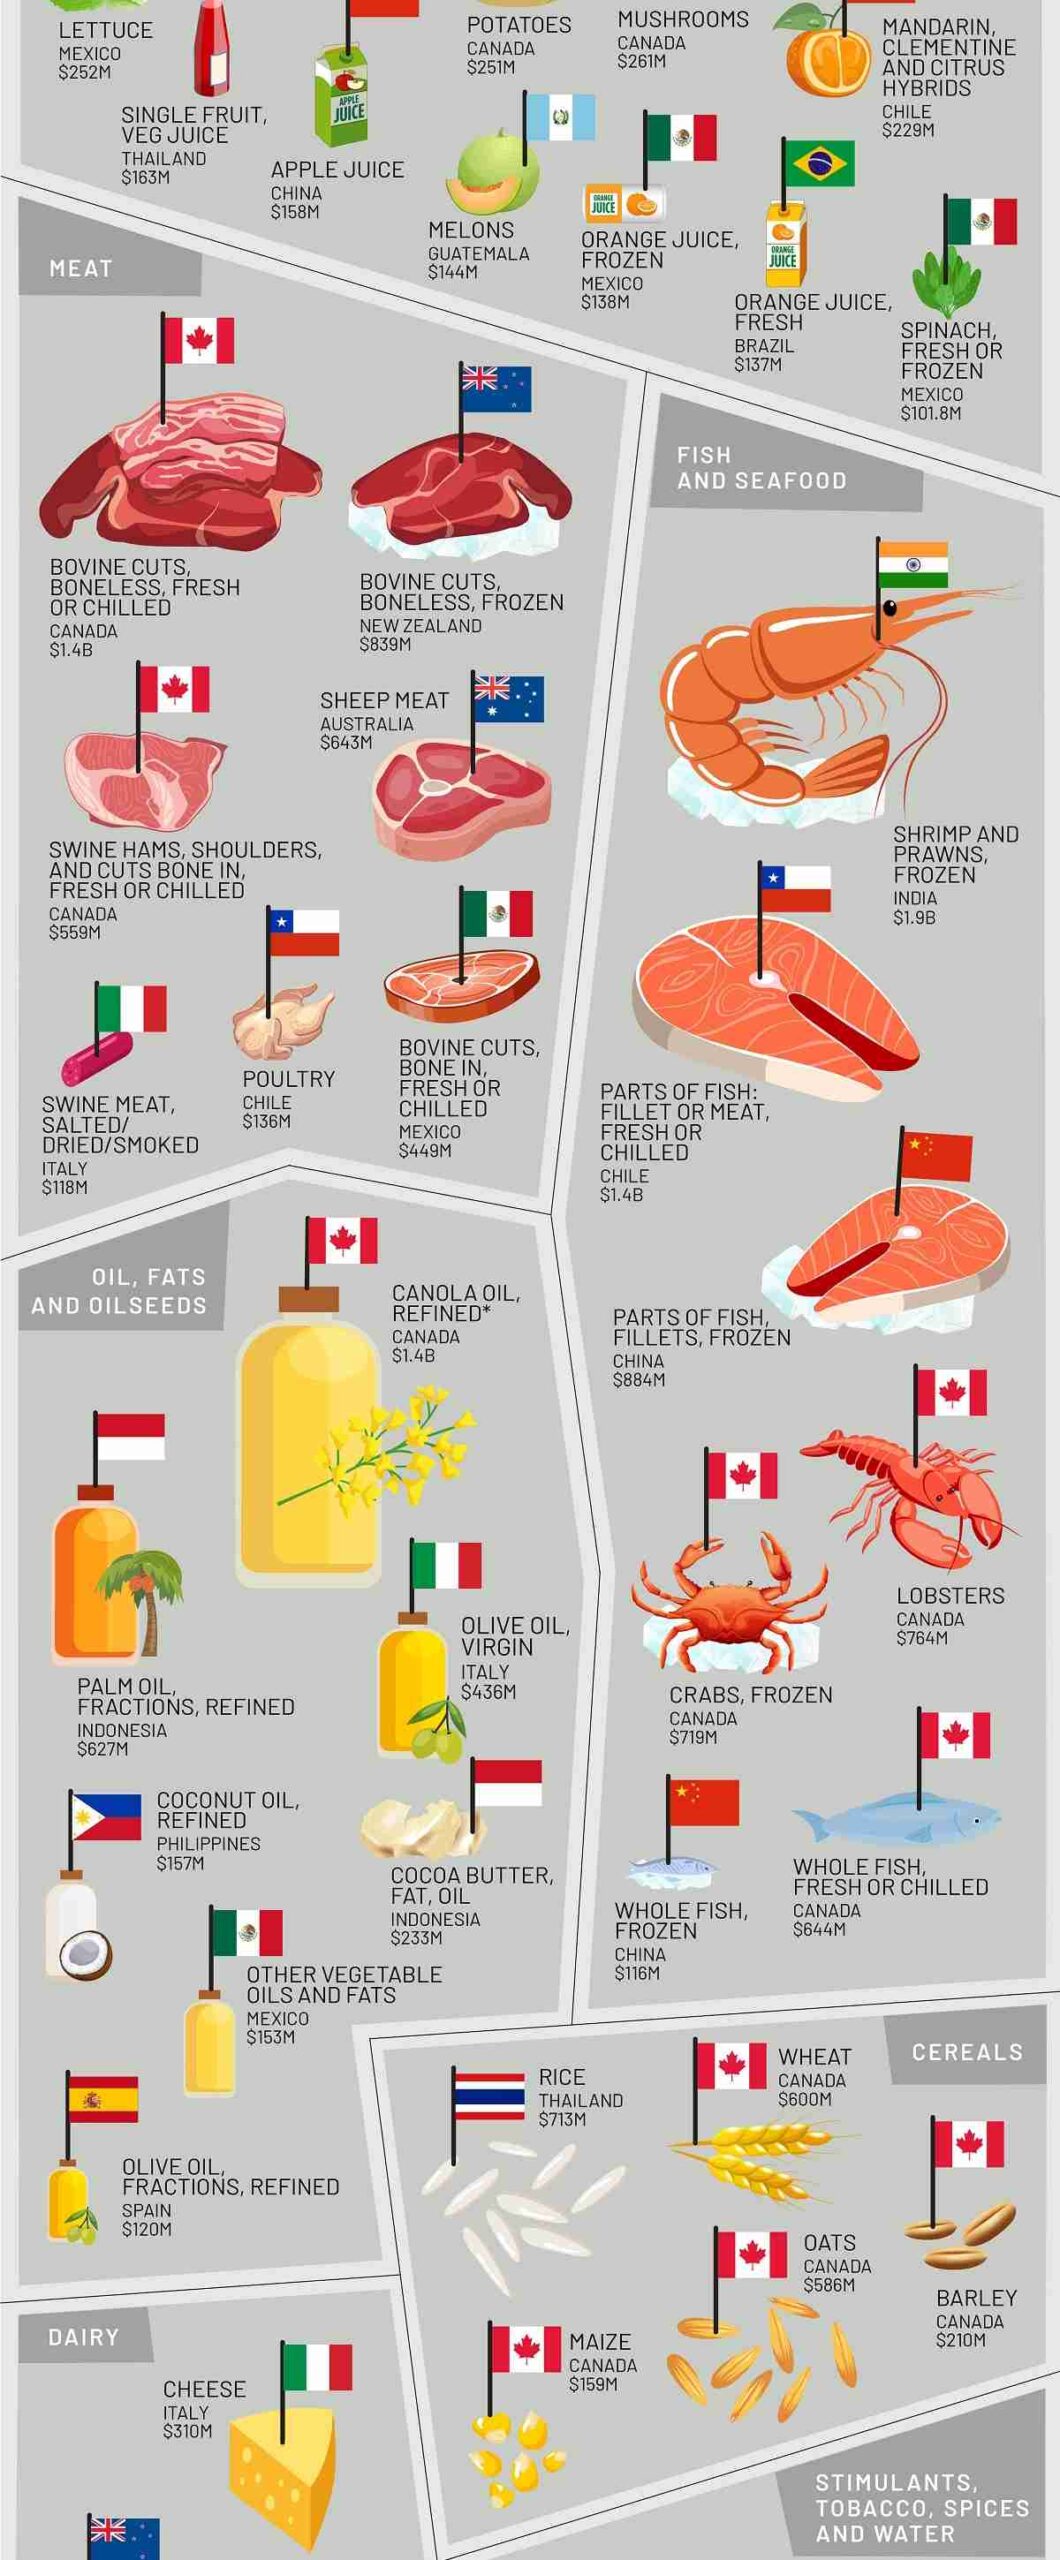 برترین مواد غذایی وارداتی به ایالات متحده بر اساس کشورها